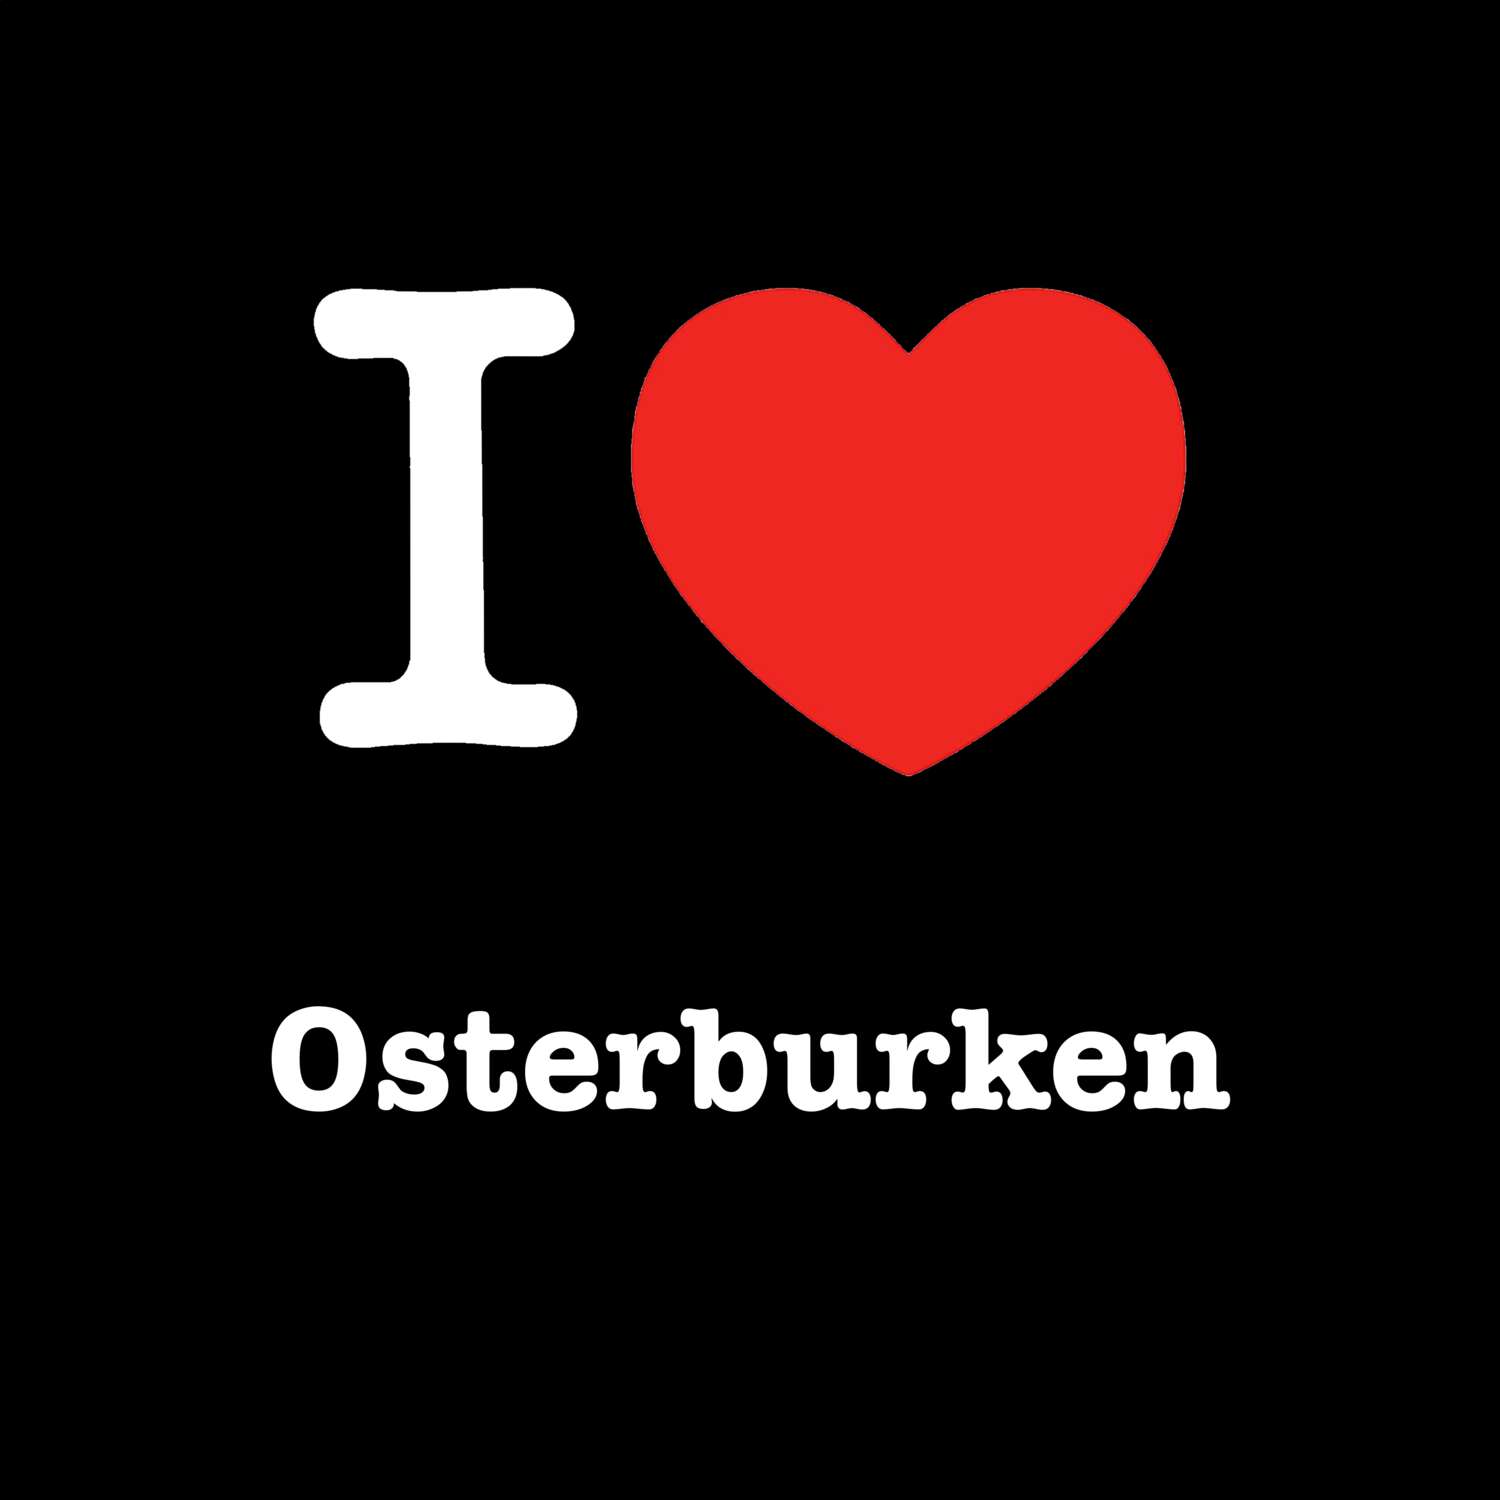 Osterburken T-Shirt »I love«